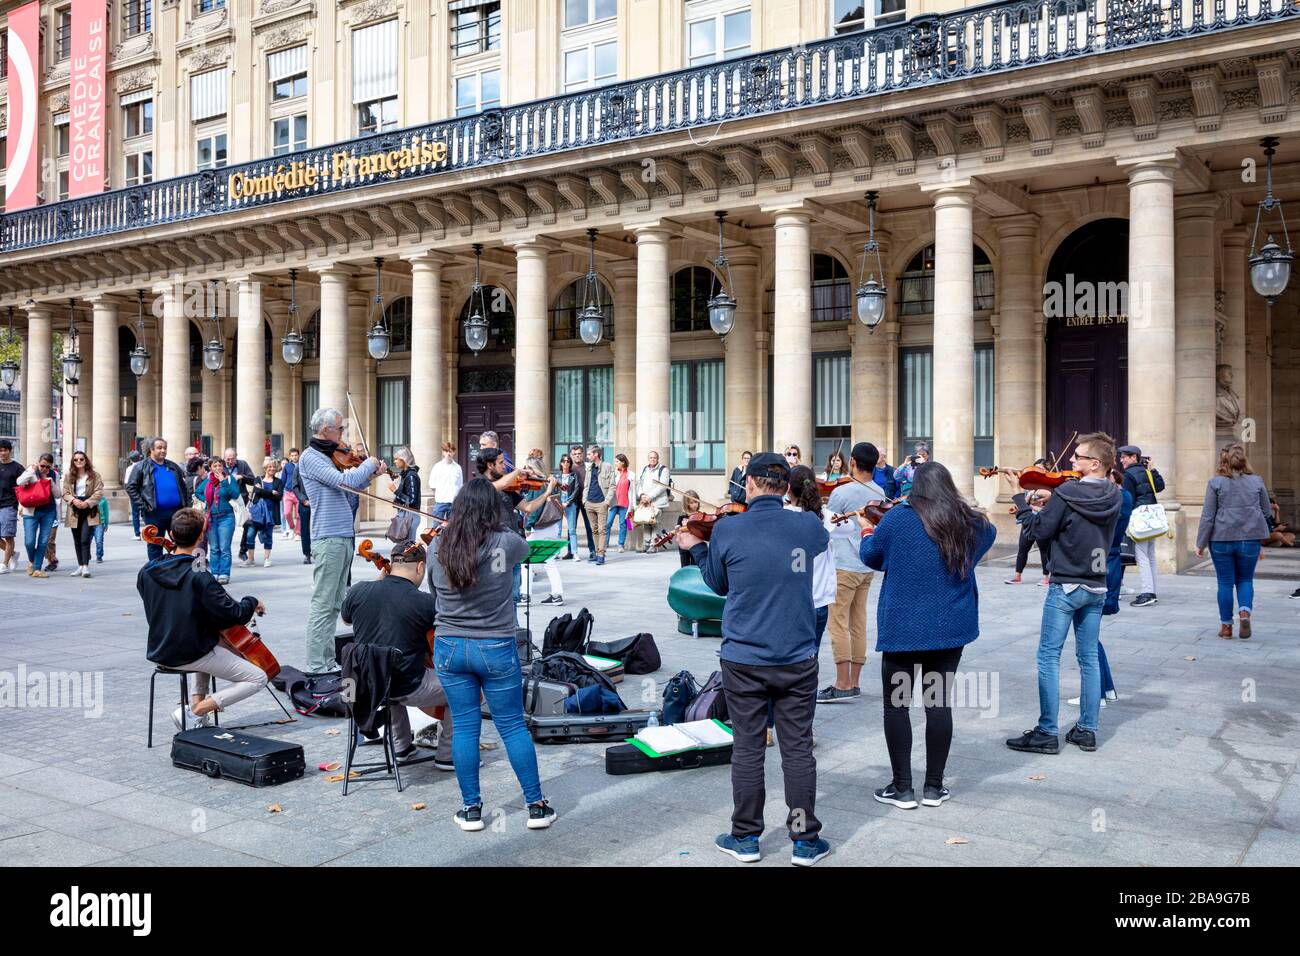 Streicherensemble mit klassischer Kammermusik an der Place Colette neben dem Palais Royal, Paris, Frankreich Stockfoto